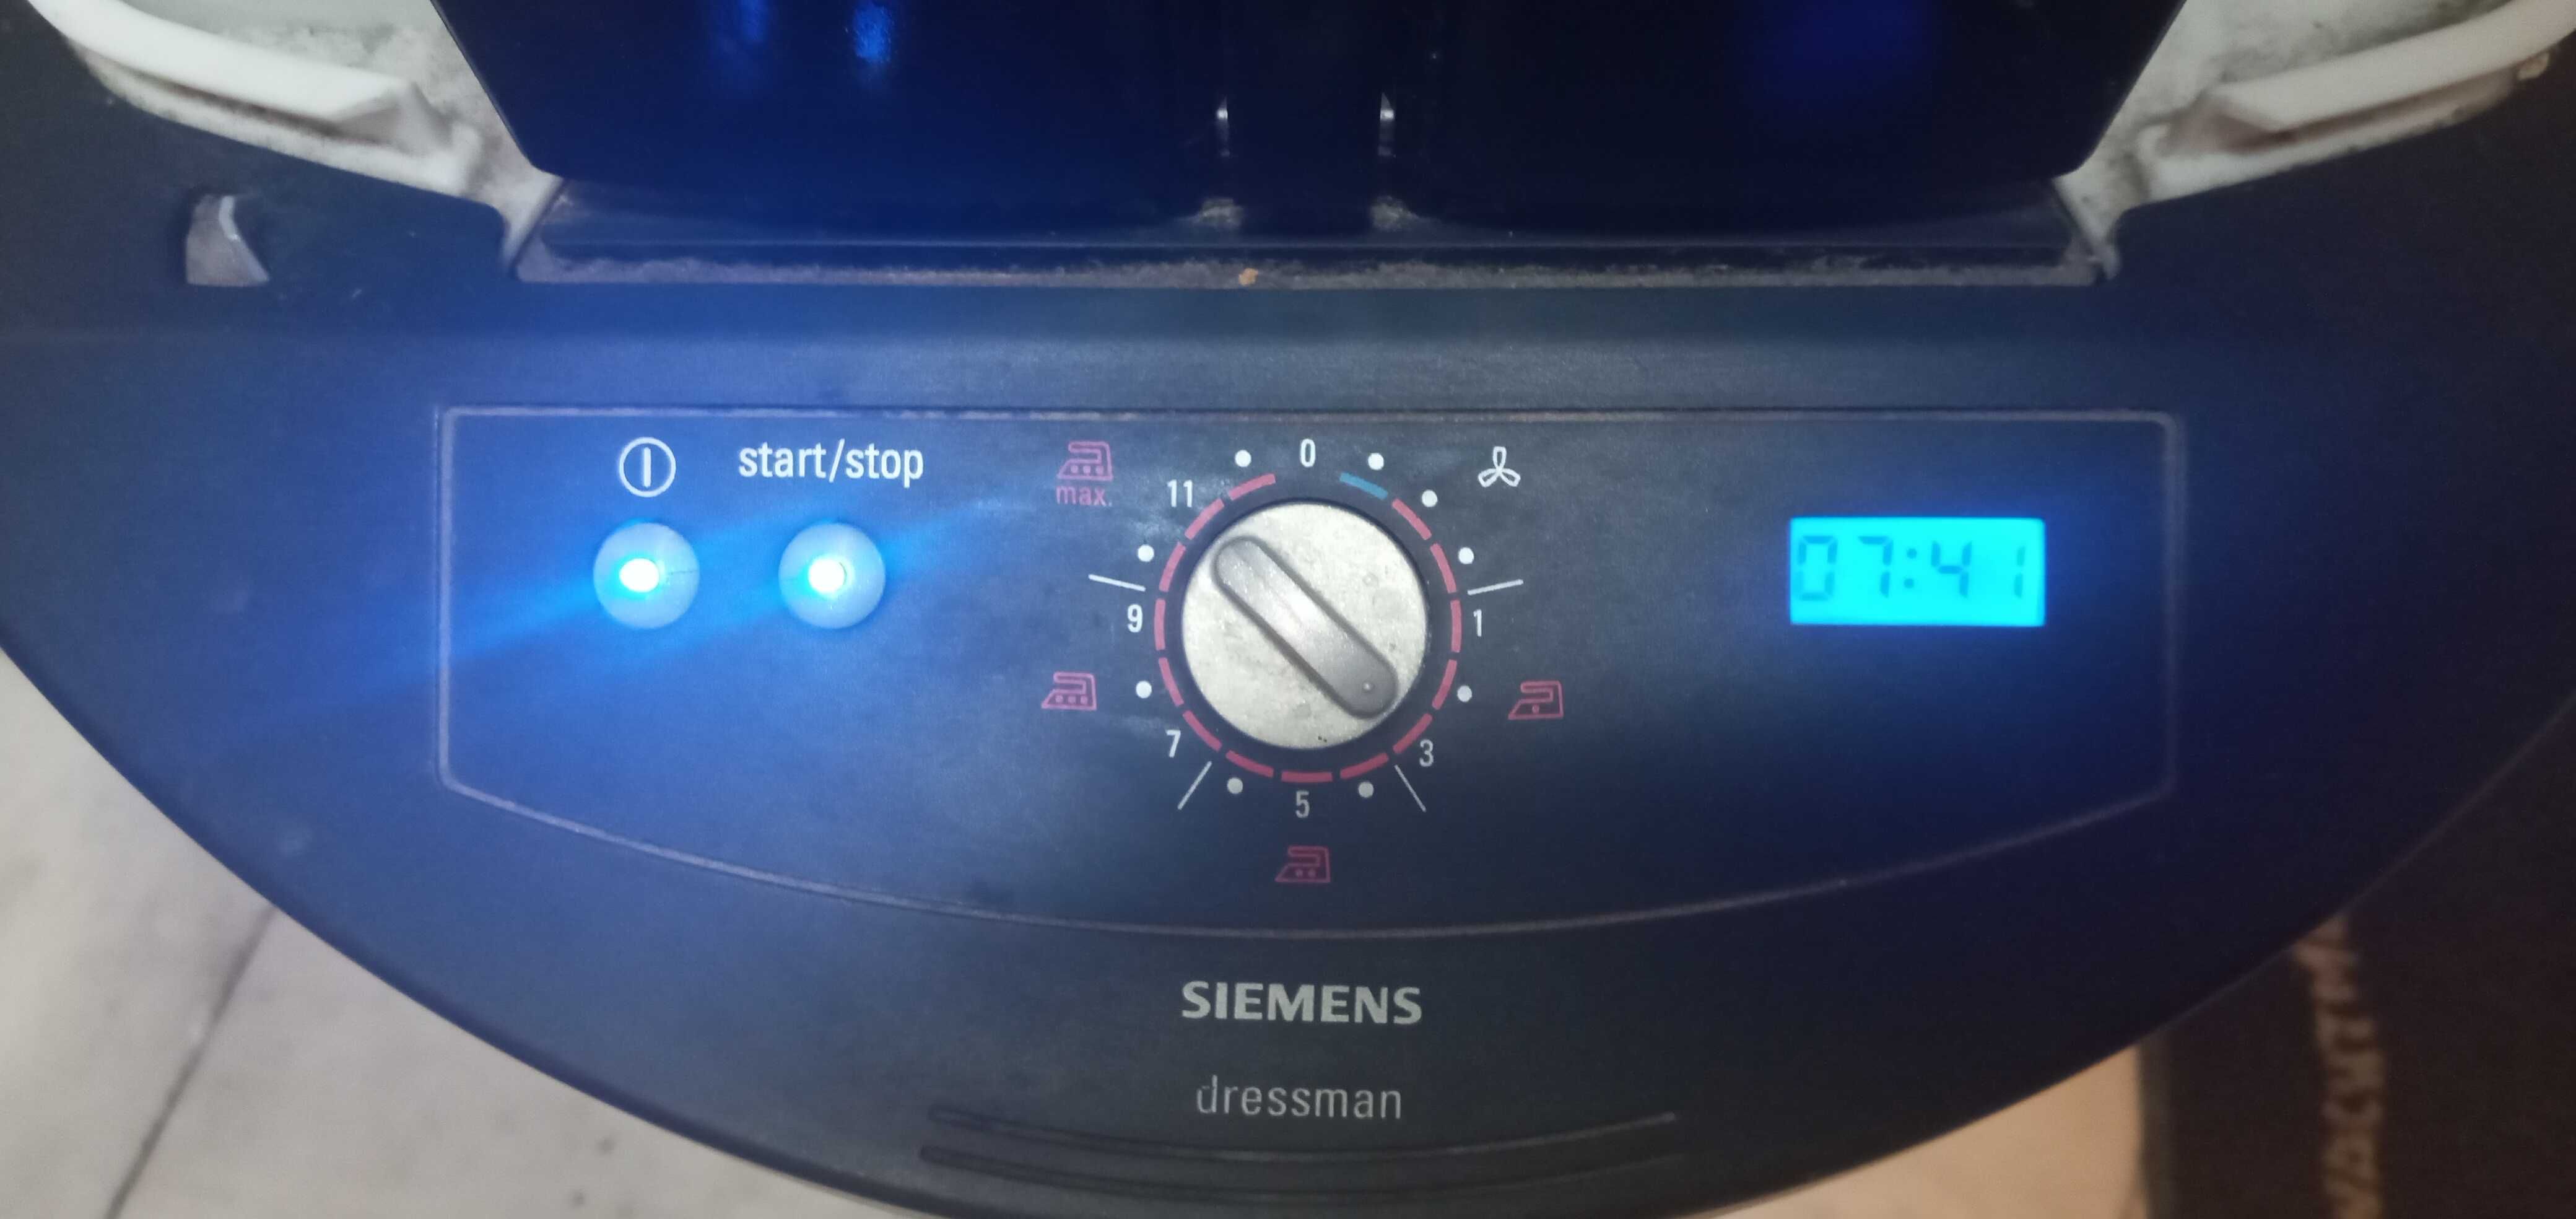 Пароманекен Siemens Dressman TJ 10500